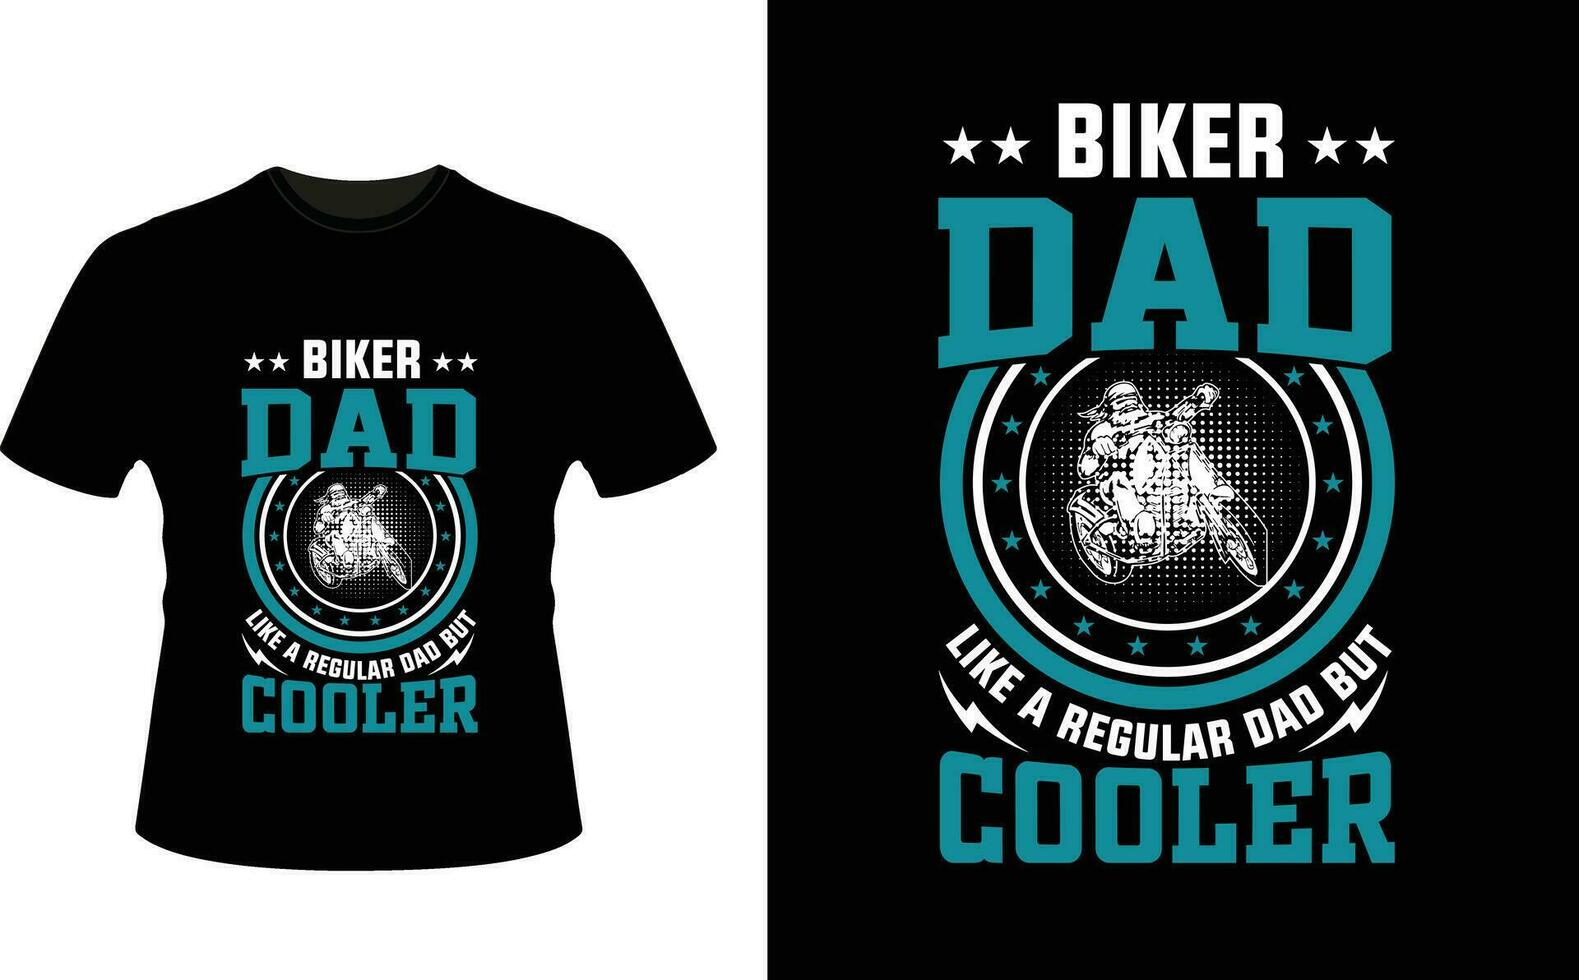 fietser vader Leuk vinden een regelmatig vader maar koeler of vader papa t-shirt ontwerp of vader dag t overhemd ontwerp vector